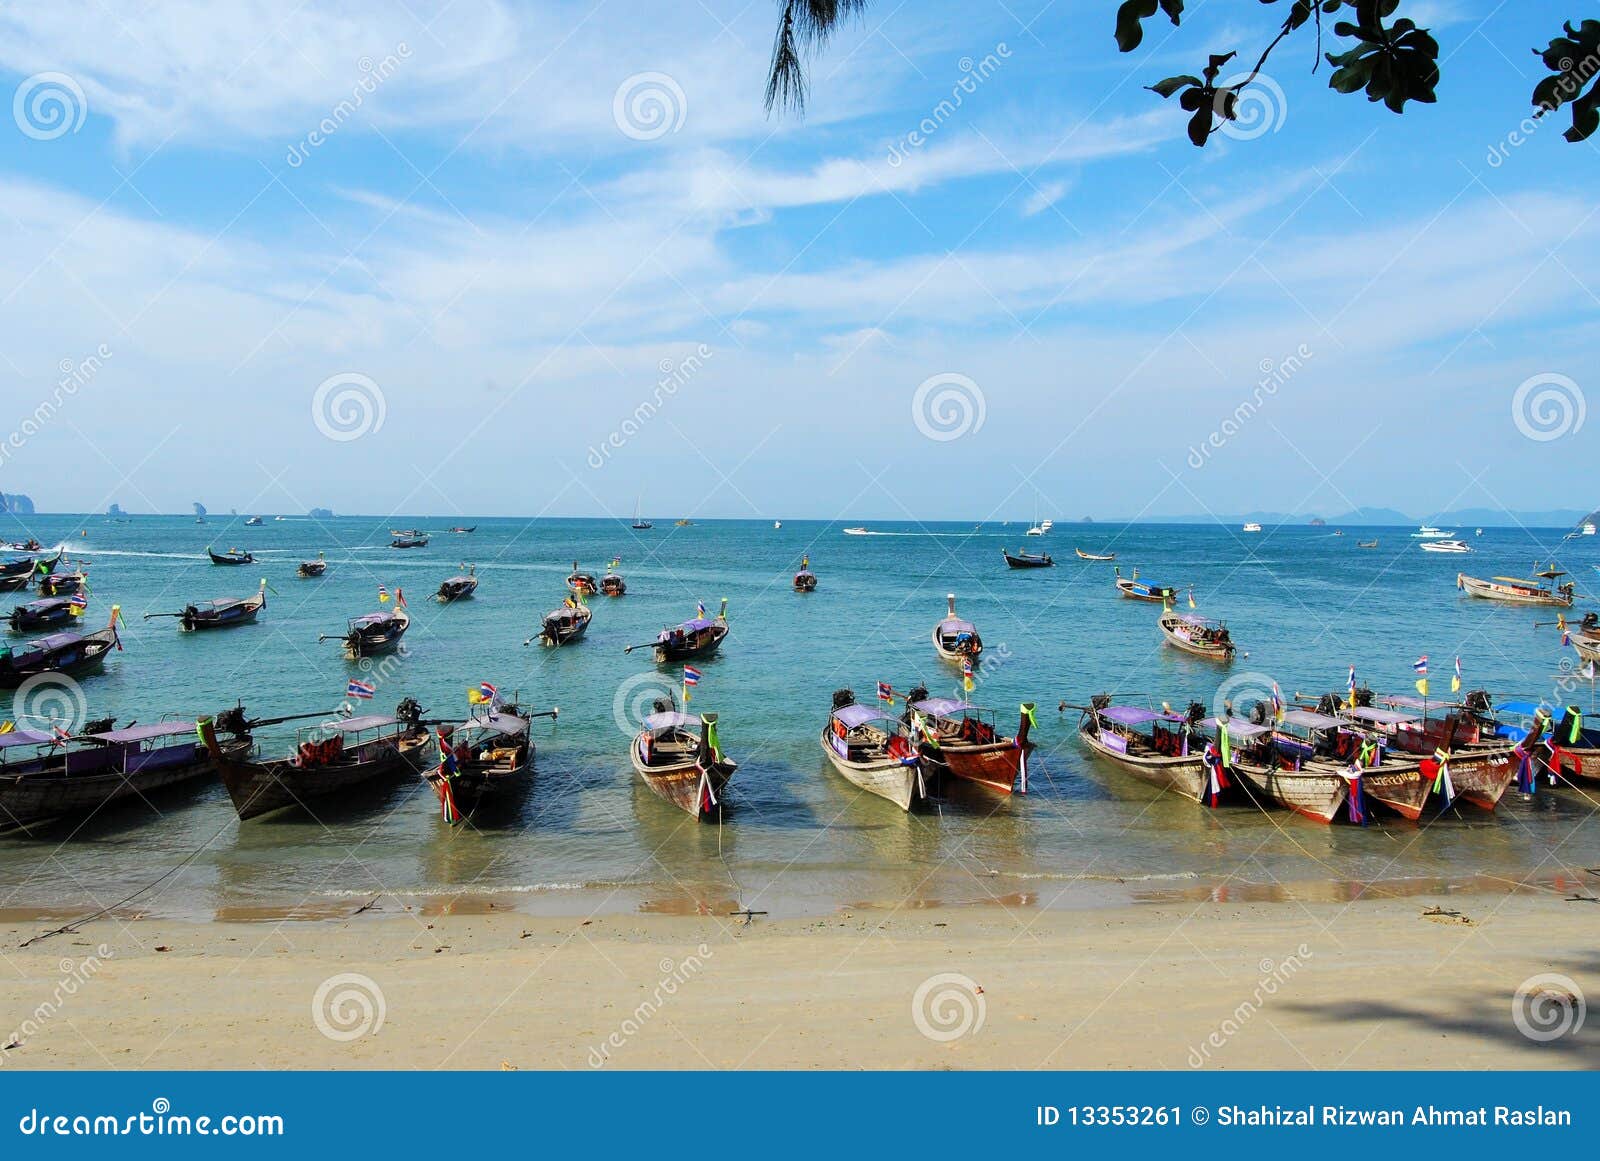 boats at ao nang beach thailand